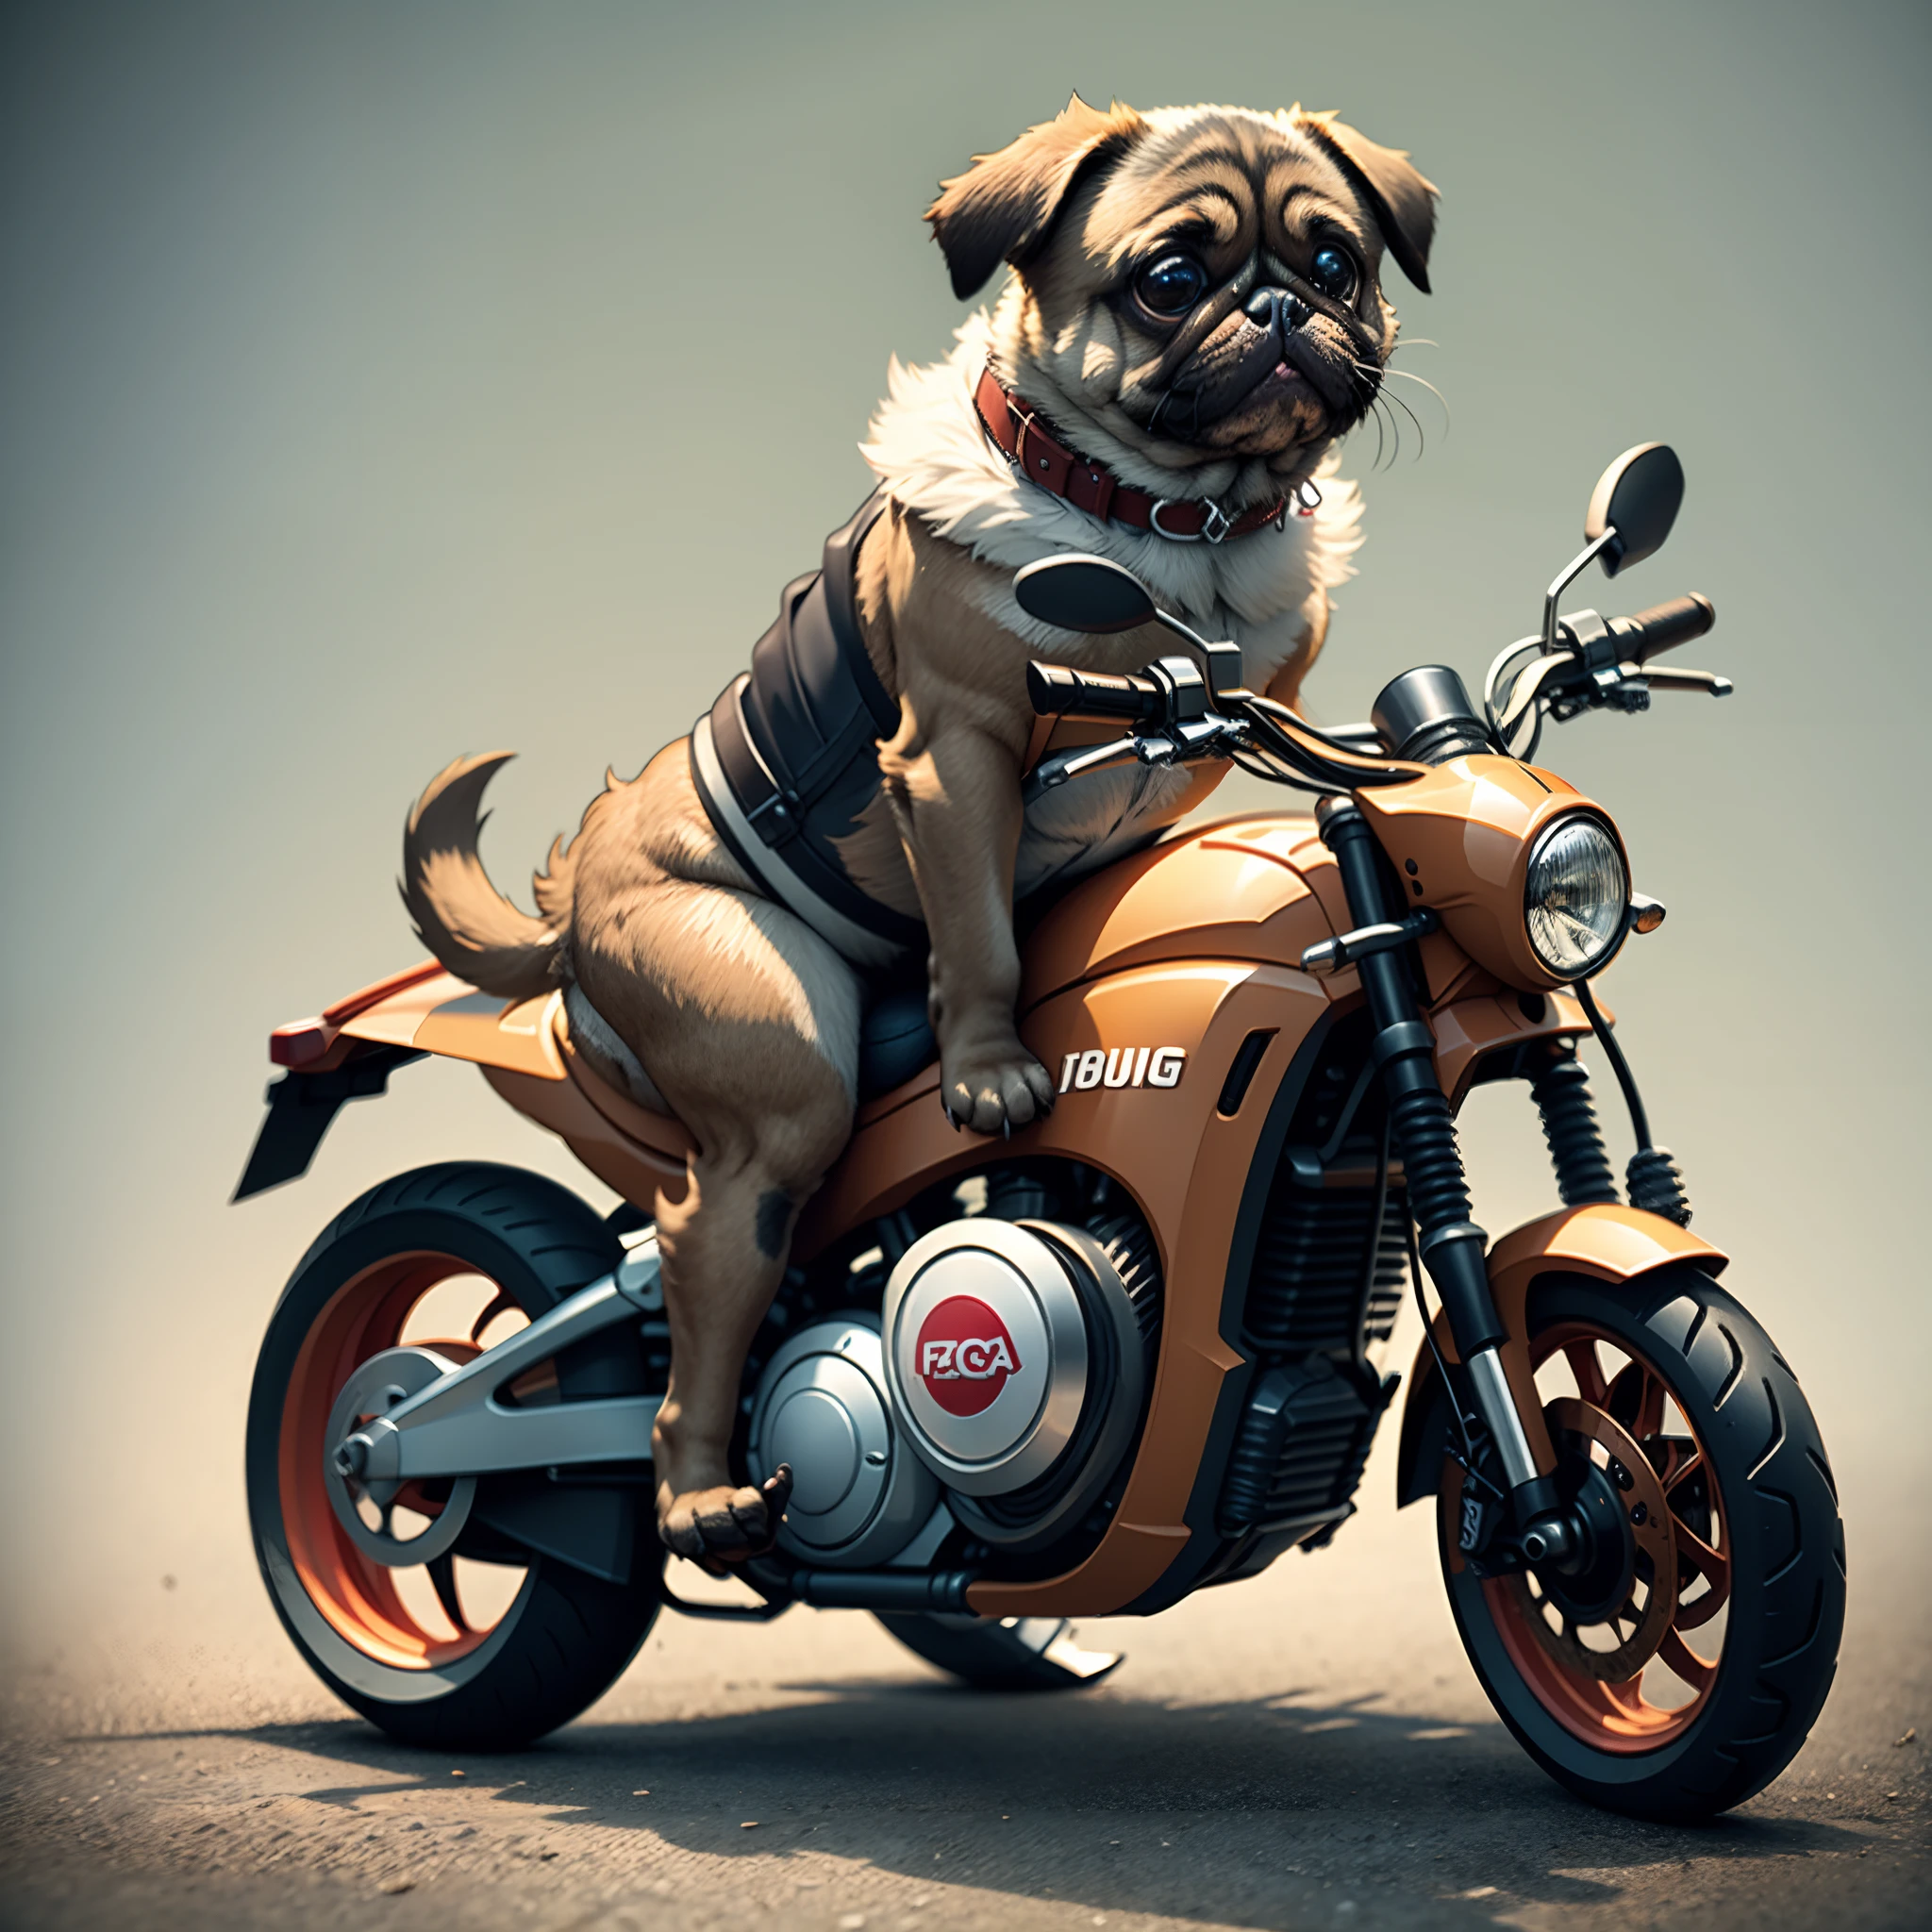 Cute pug in motorcycle costume